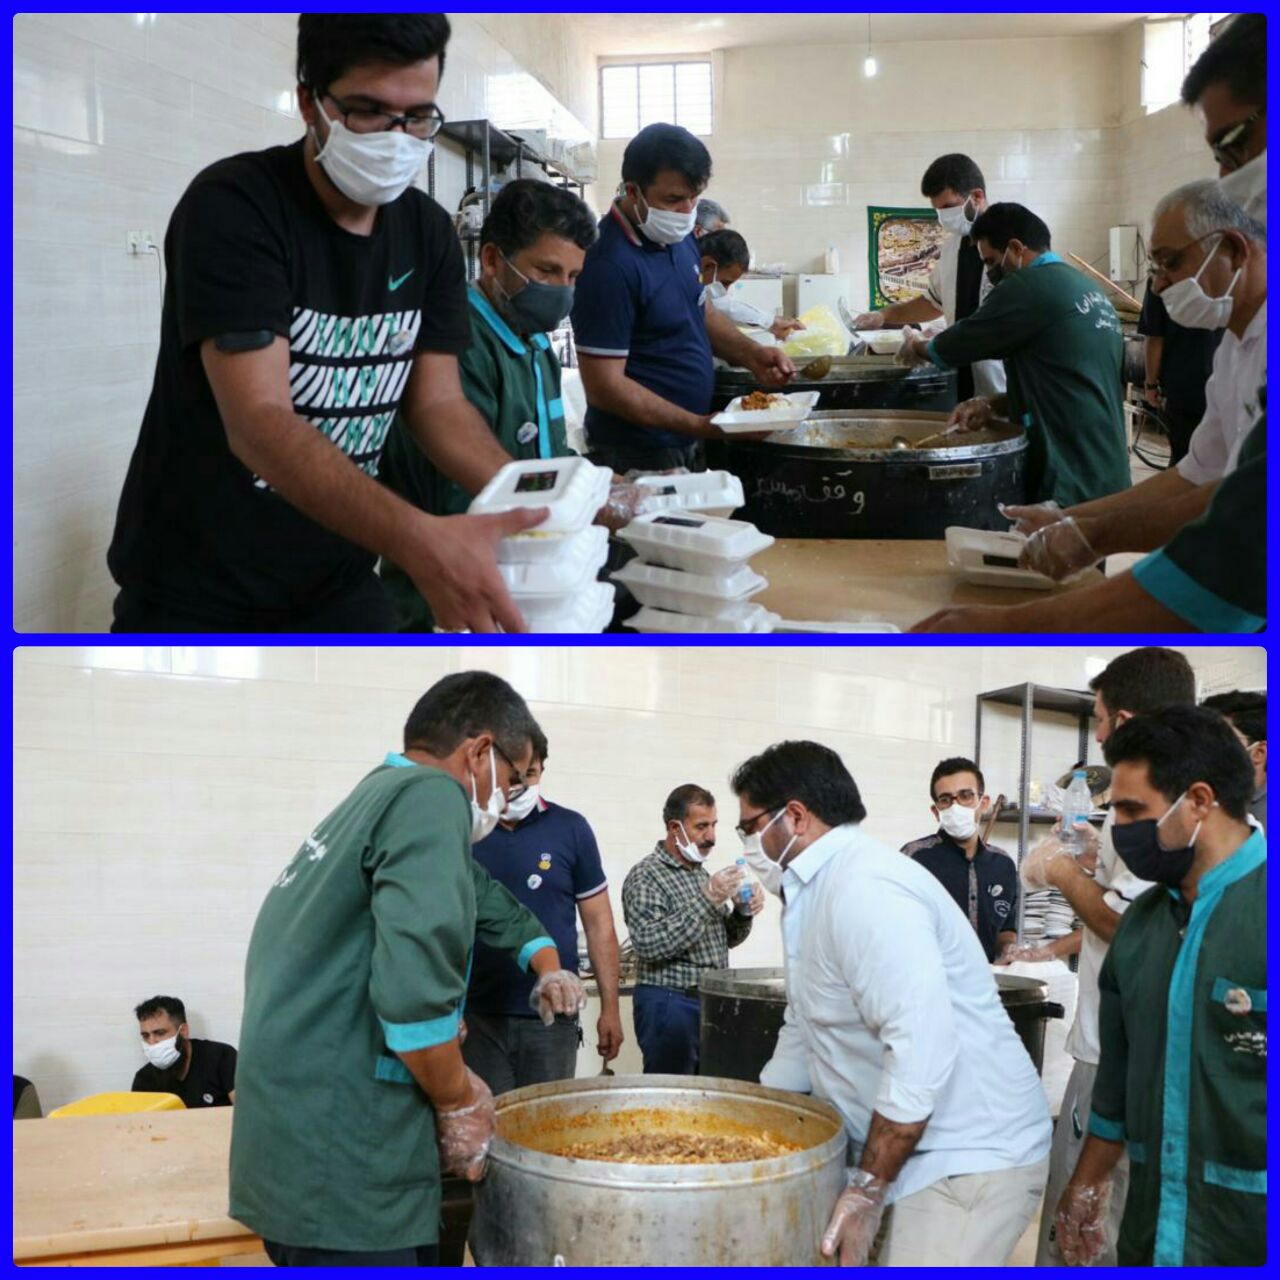  سنت حسنه اطعام نیازمندان در عید غدیر